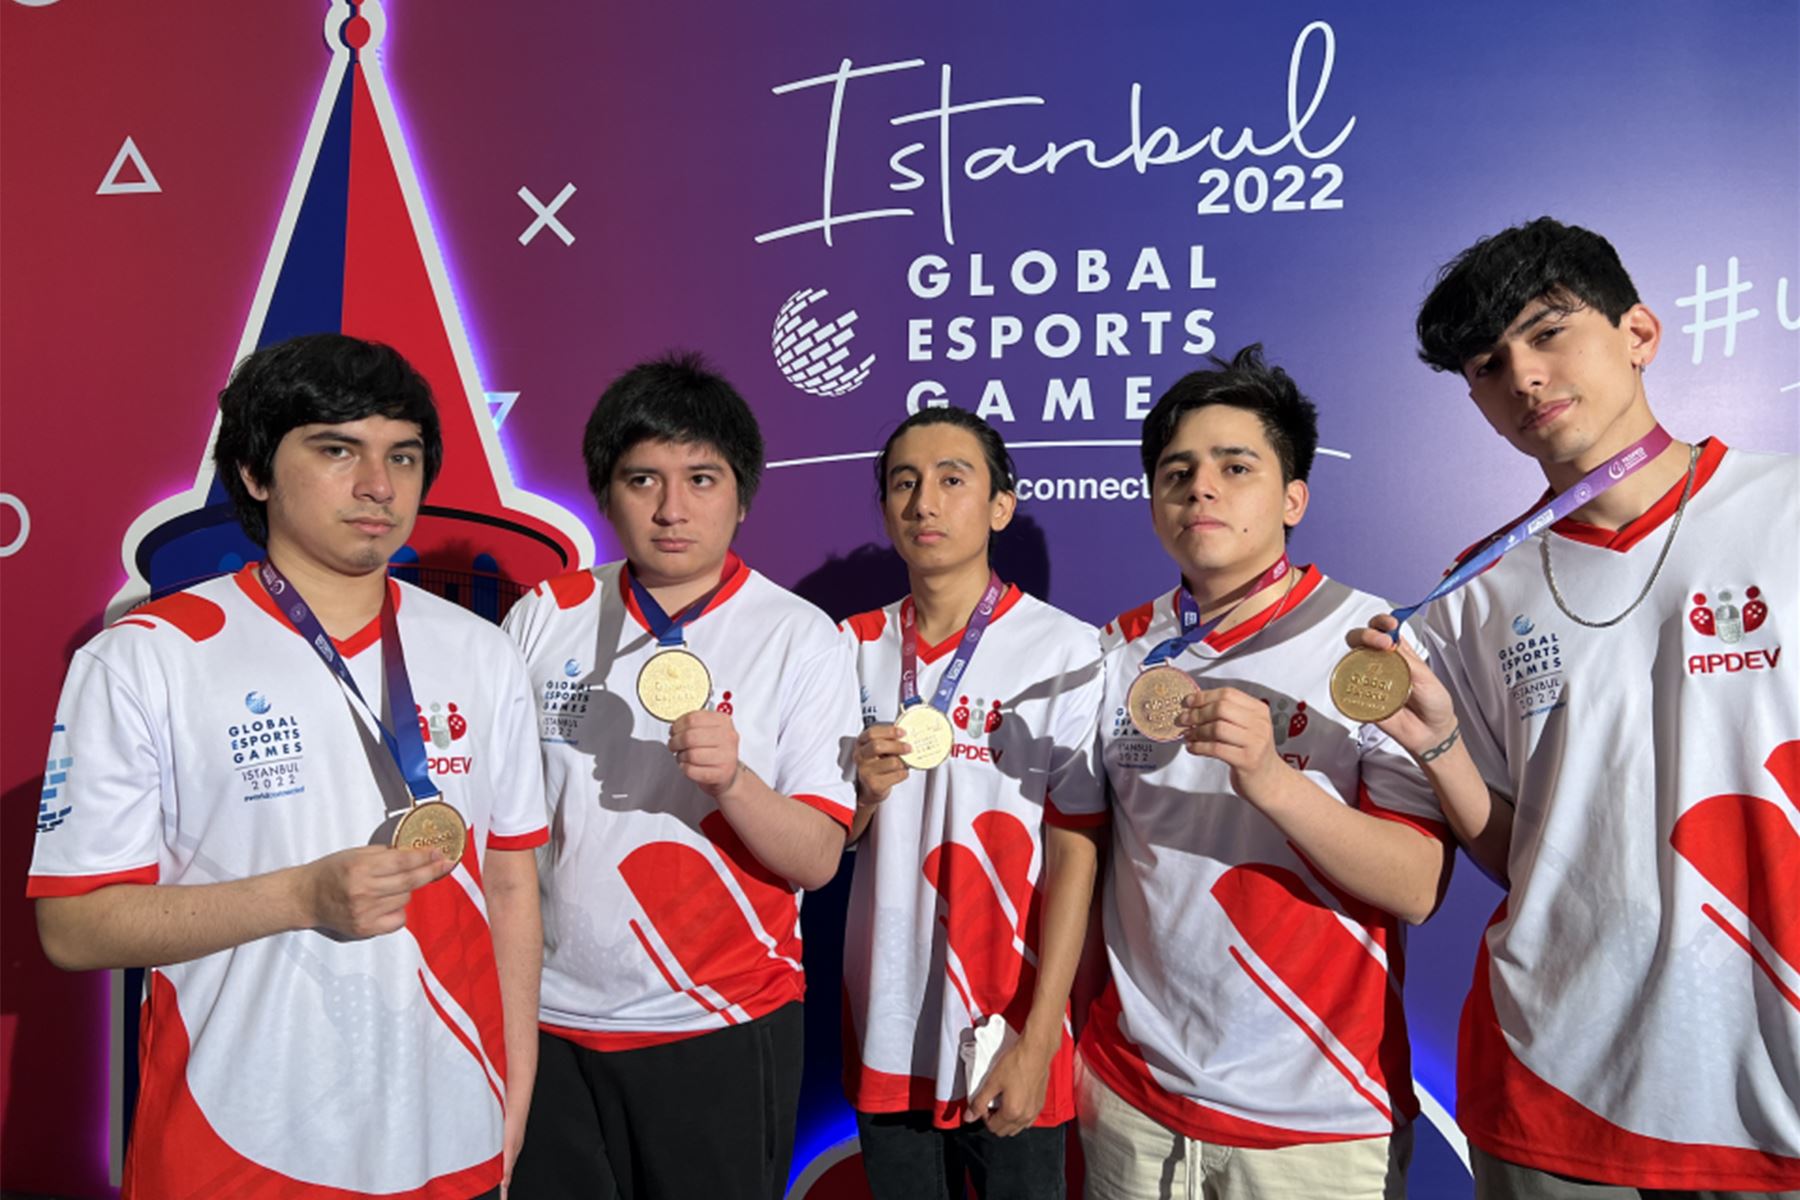 El "Team Perú" representa no solo a nuestro país, también a todo al continente americano en la categoría de Dota 2.